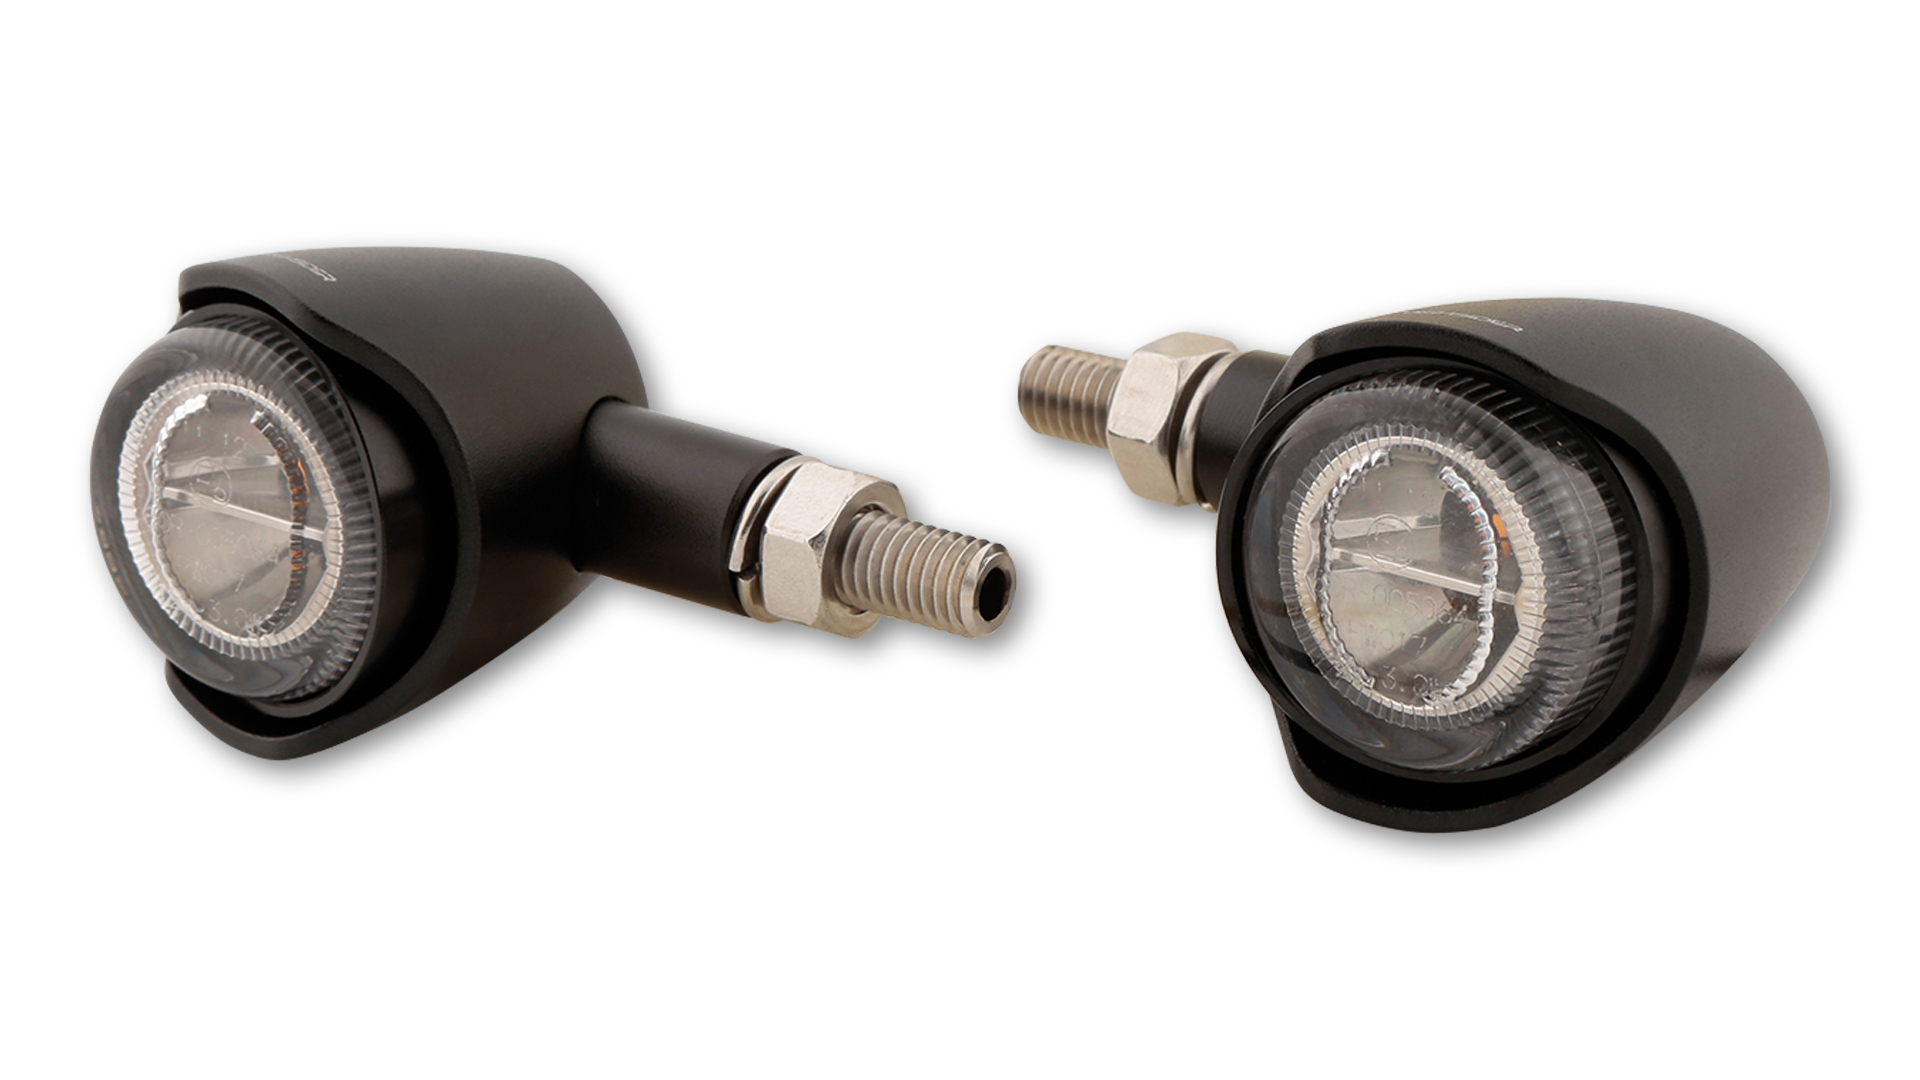 HIGHSIDER AKRON-X LED Blinker, getöntes Glas, in verschiedenen Farben erhältlich, E-geprüft, Paar.